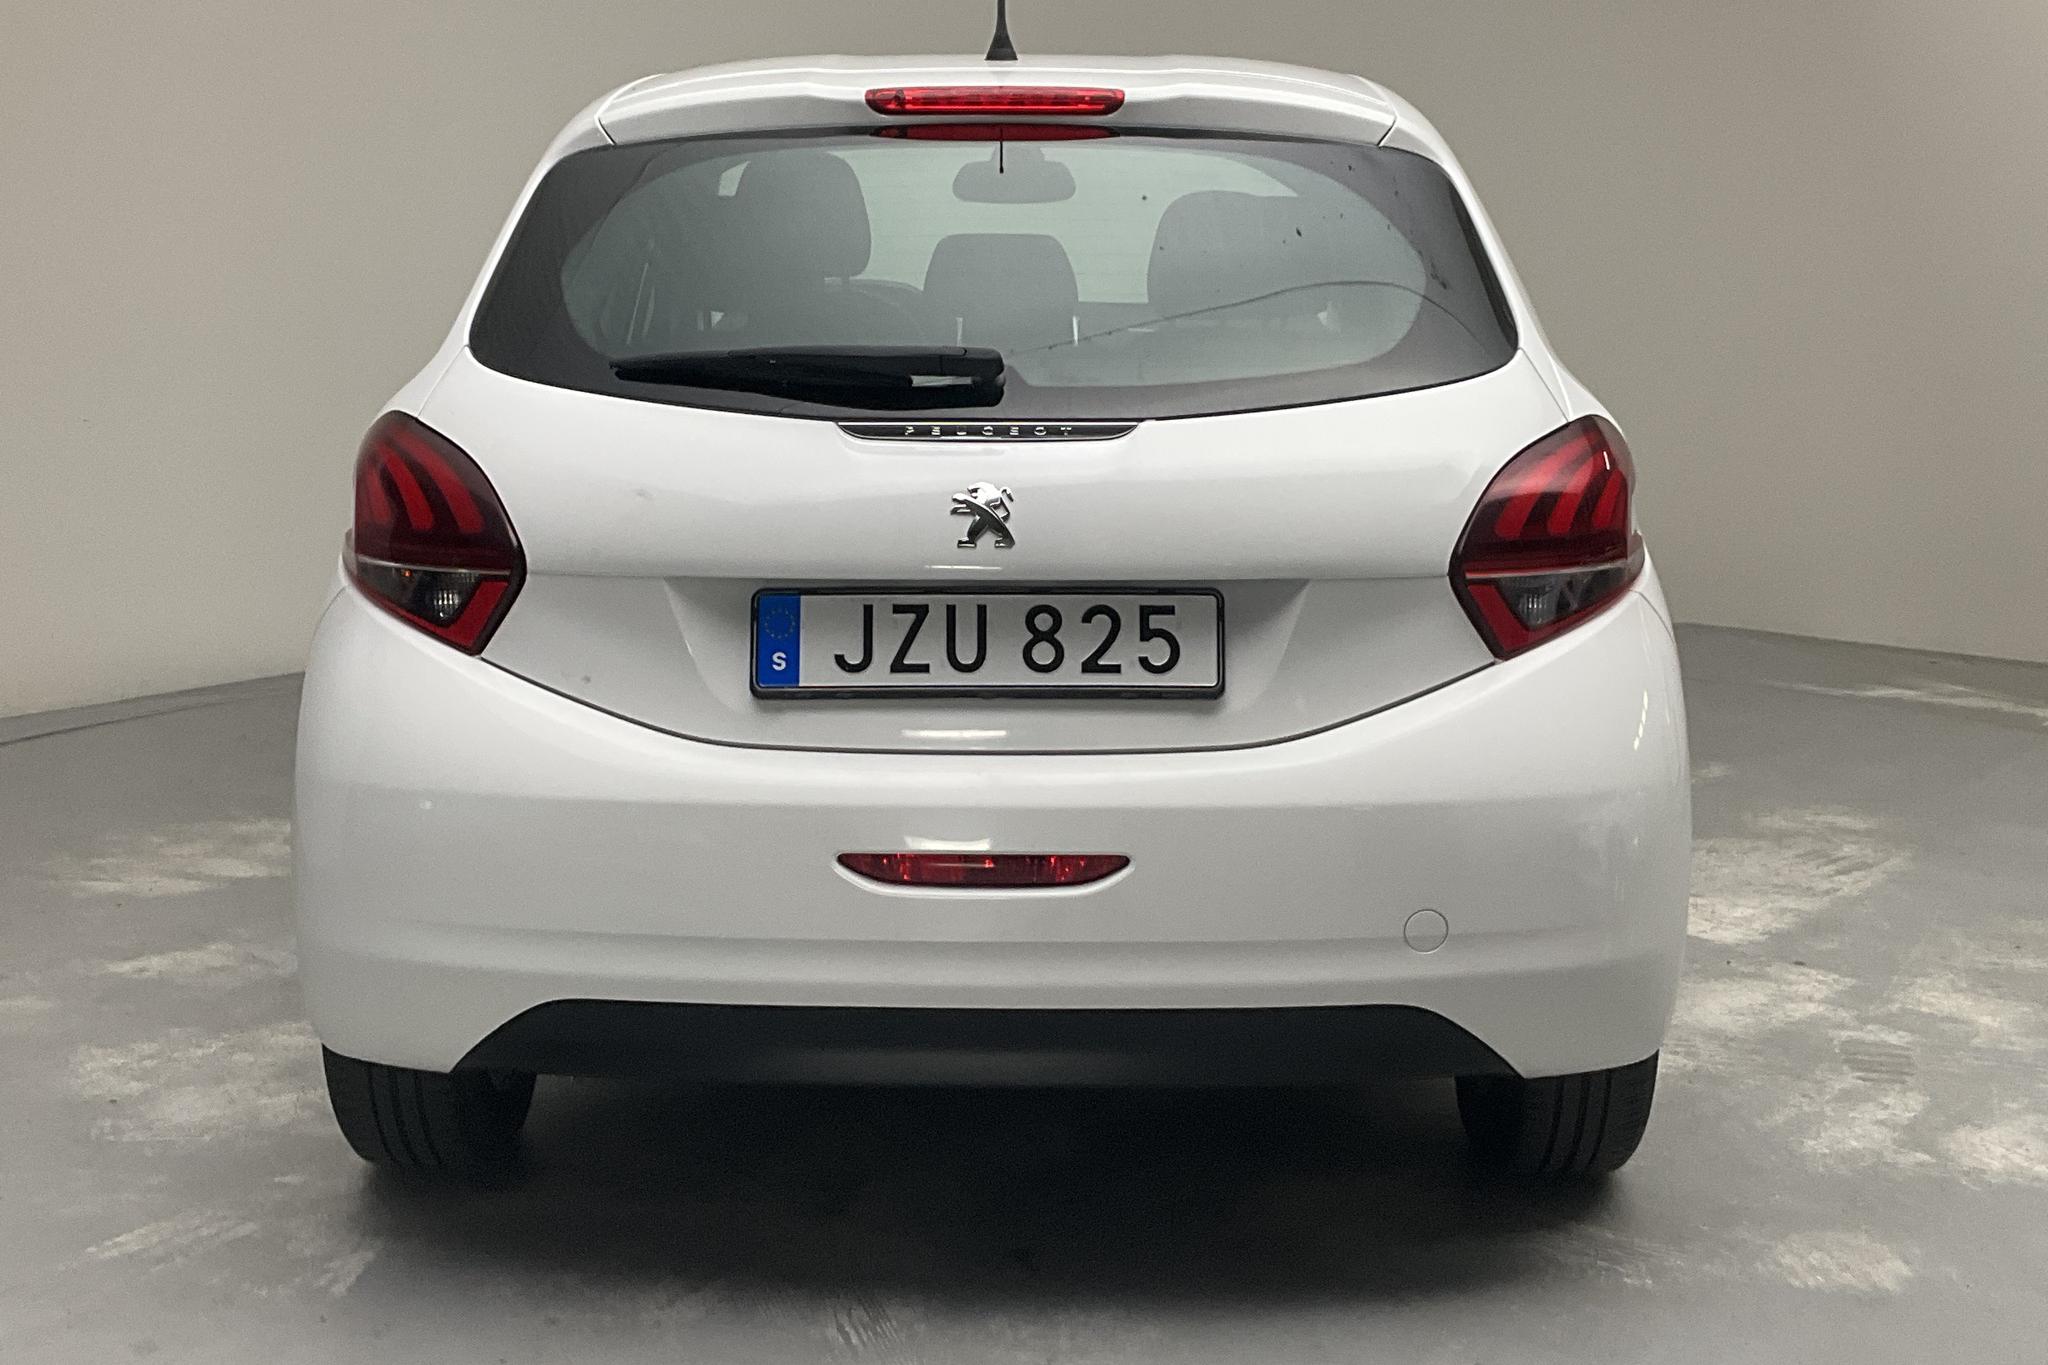 Peugeot 208 PureTech 5dr (82hk) - 120 190 km - Manual - white - 2016